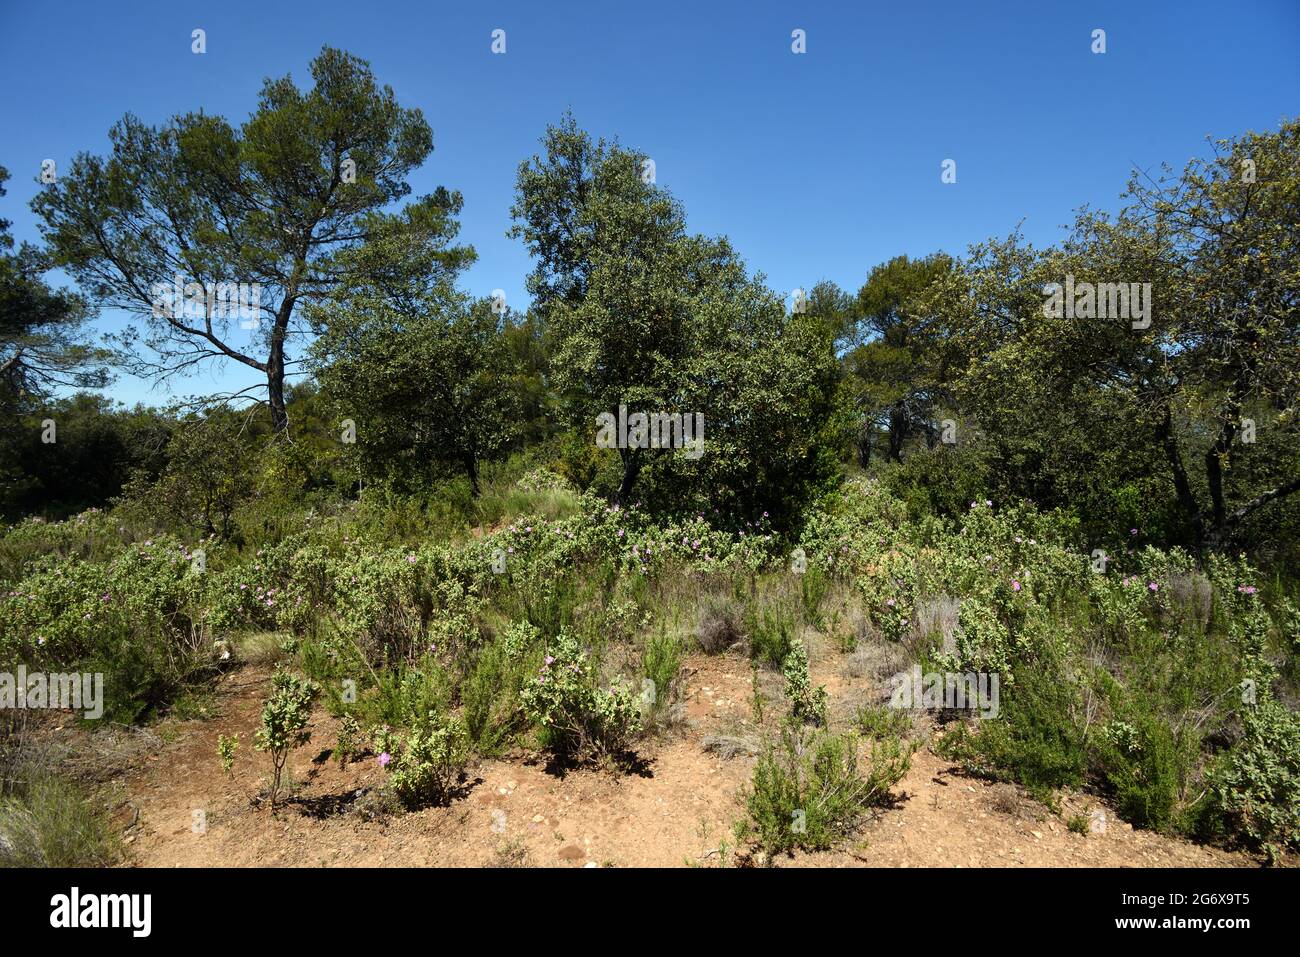 Typische Garrigue- oder Maquis-Vegetation oder Ökosystem im Frühling mit blühender Graublättriger Zistrose, Cistus albidus & mediterraner Wald Provence Frankreich Stockfoto